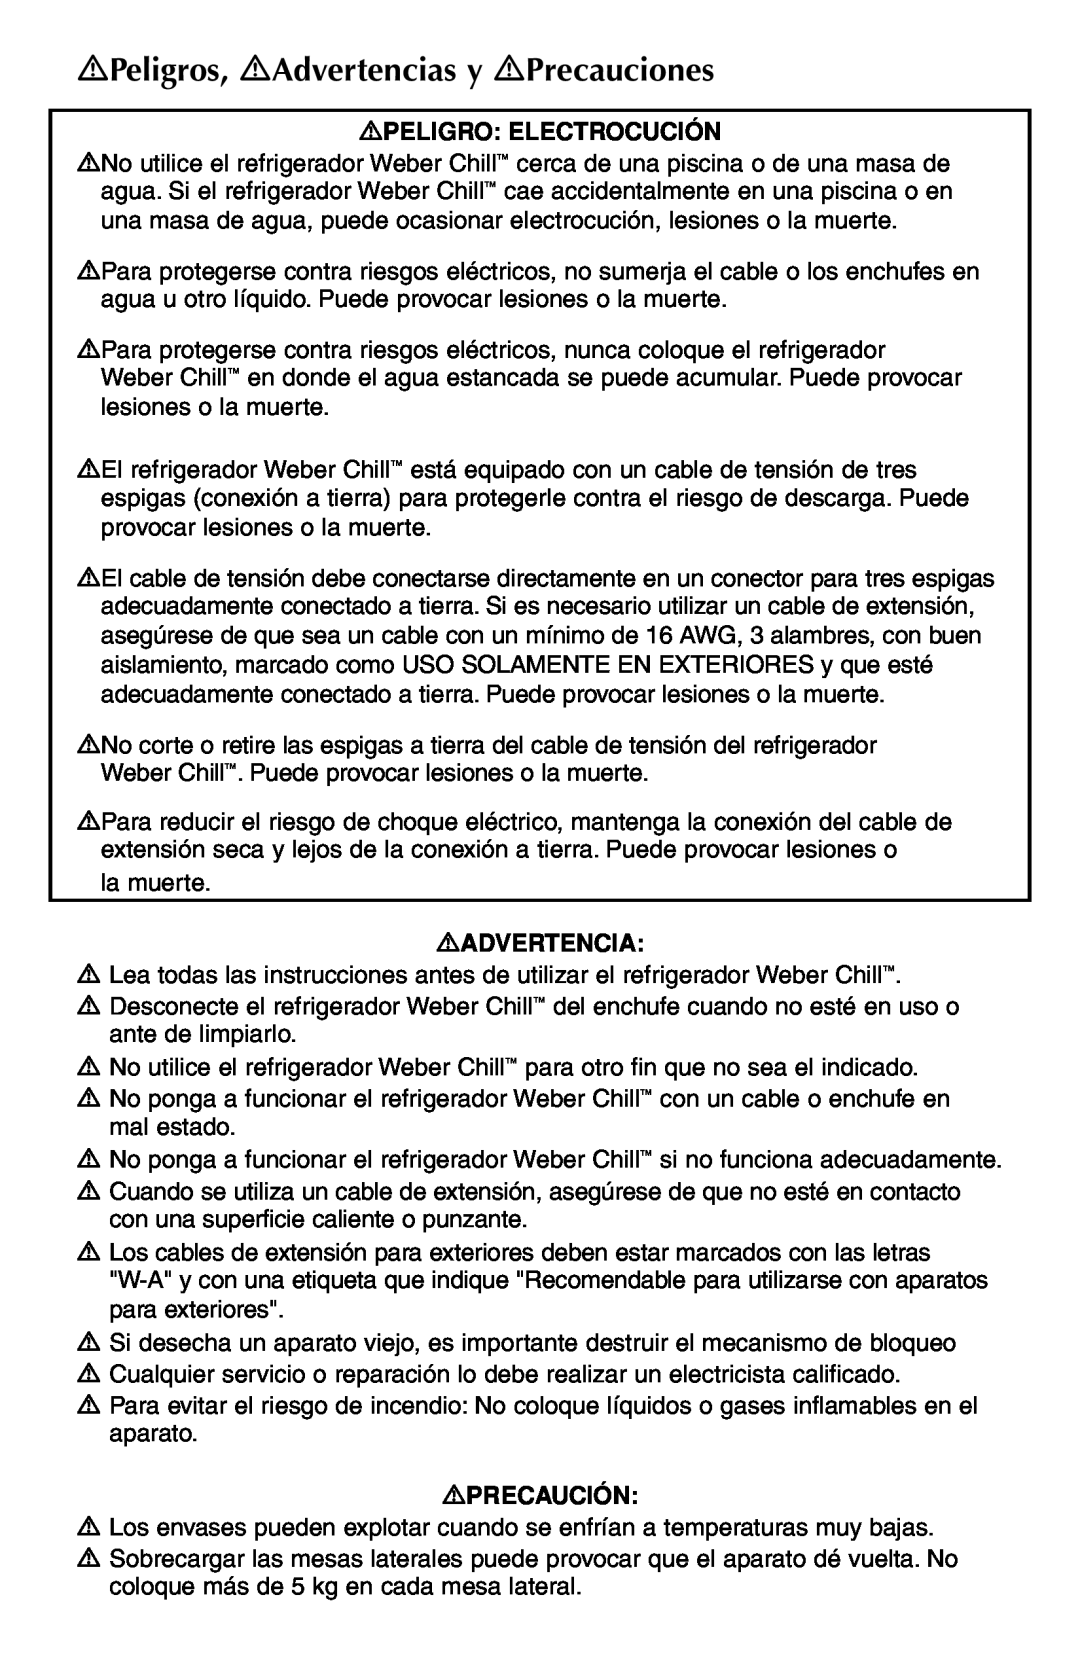 Weber Refrigerator manual Peligros, Advertencias y Precauciones, Peligro Electrocución, Precaución 